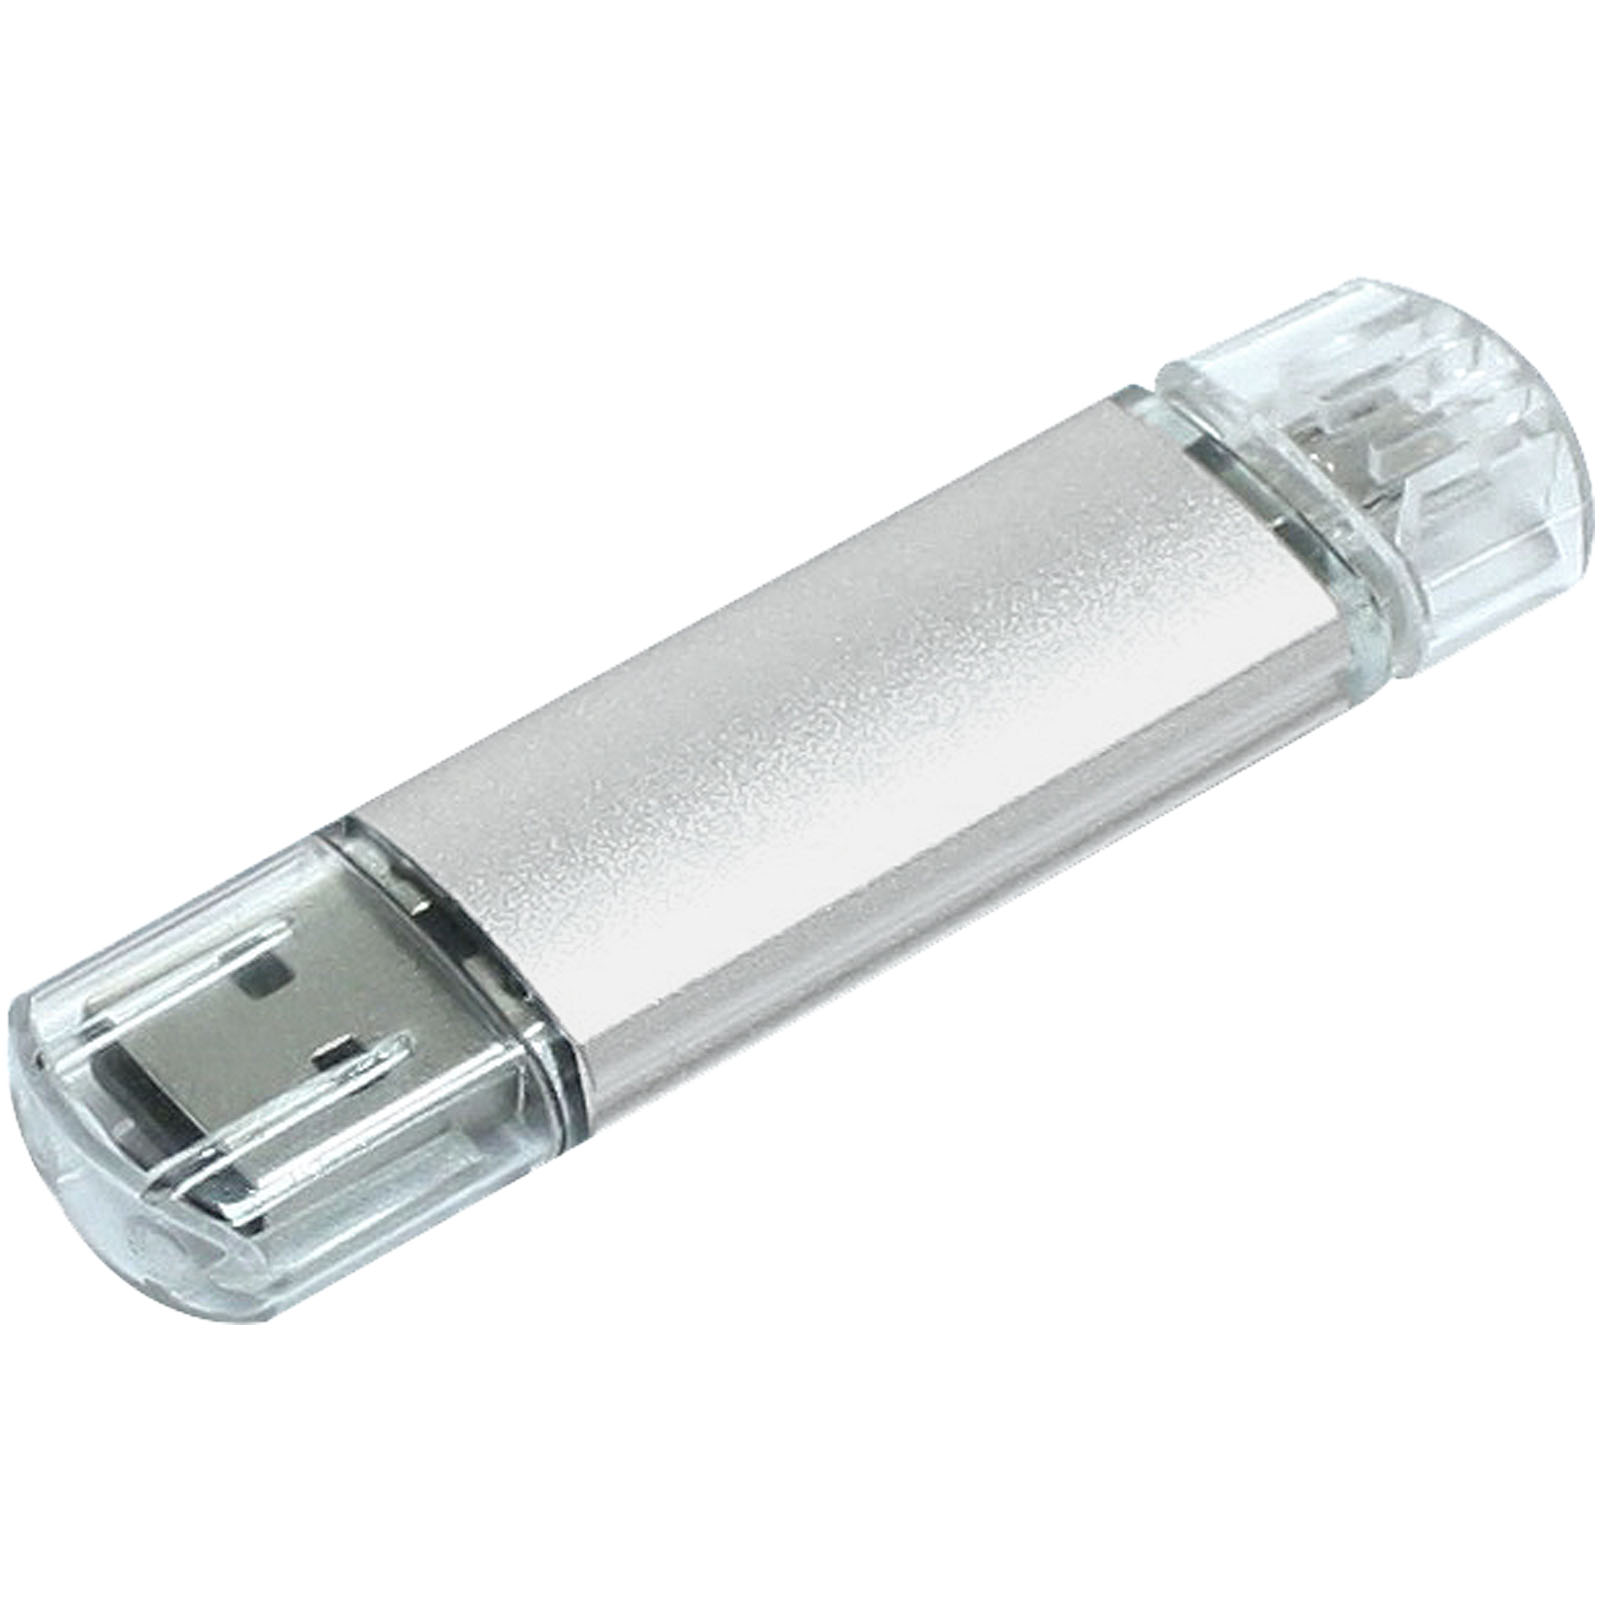 Clé USB OTG Micro USB en Aluminium - Saint-Martin-des-Champs - Zaprinta France